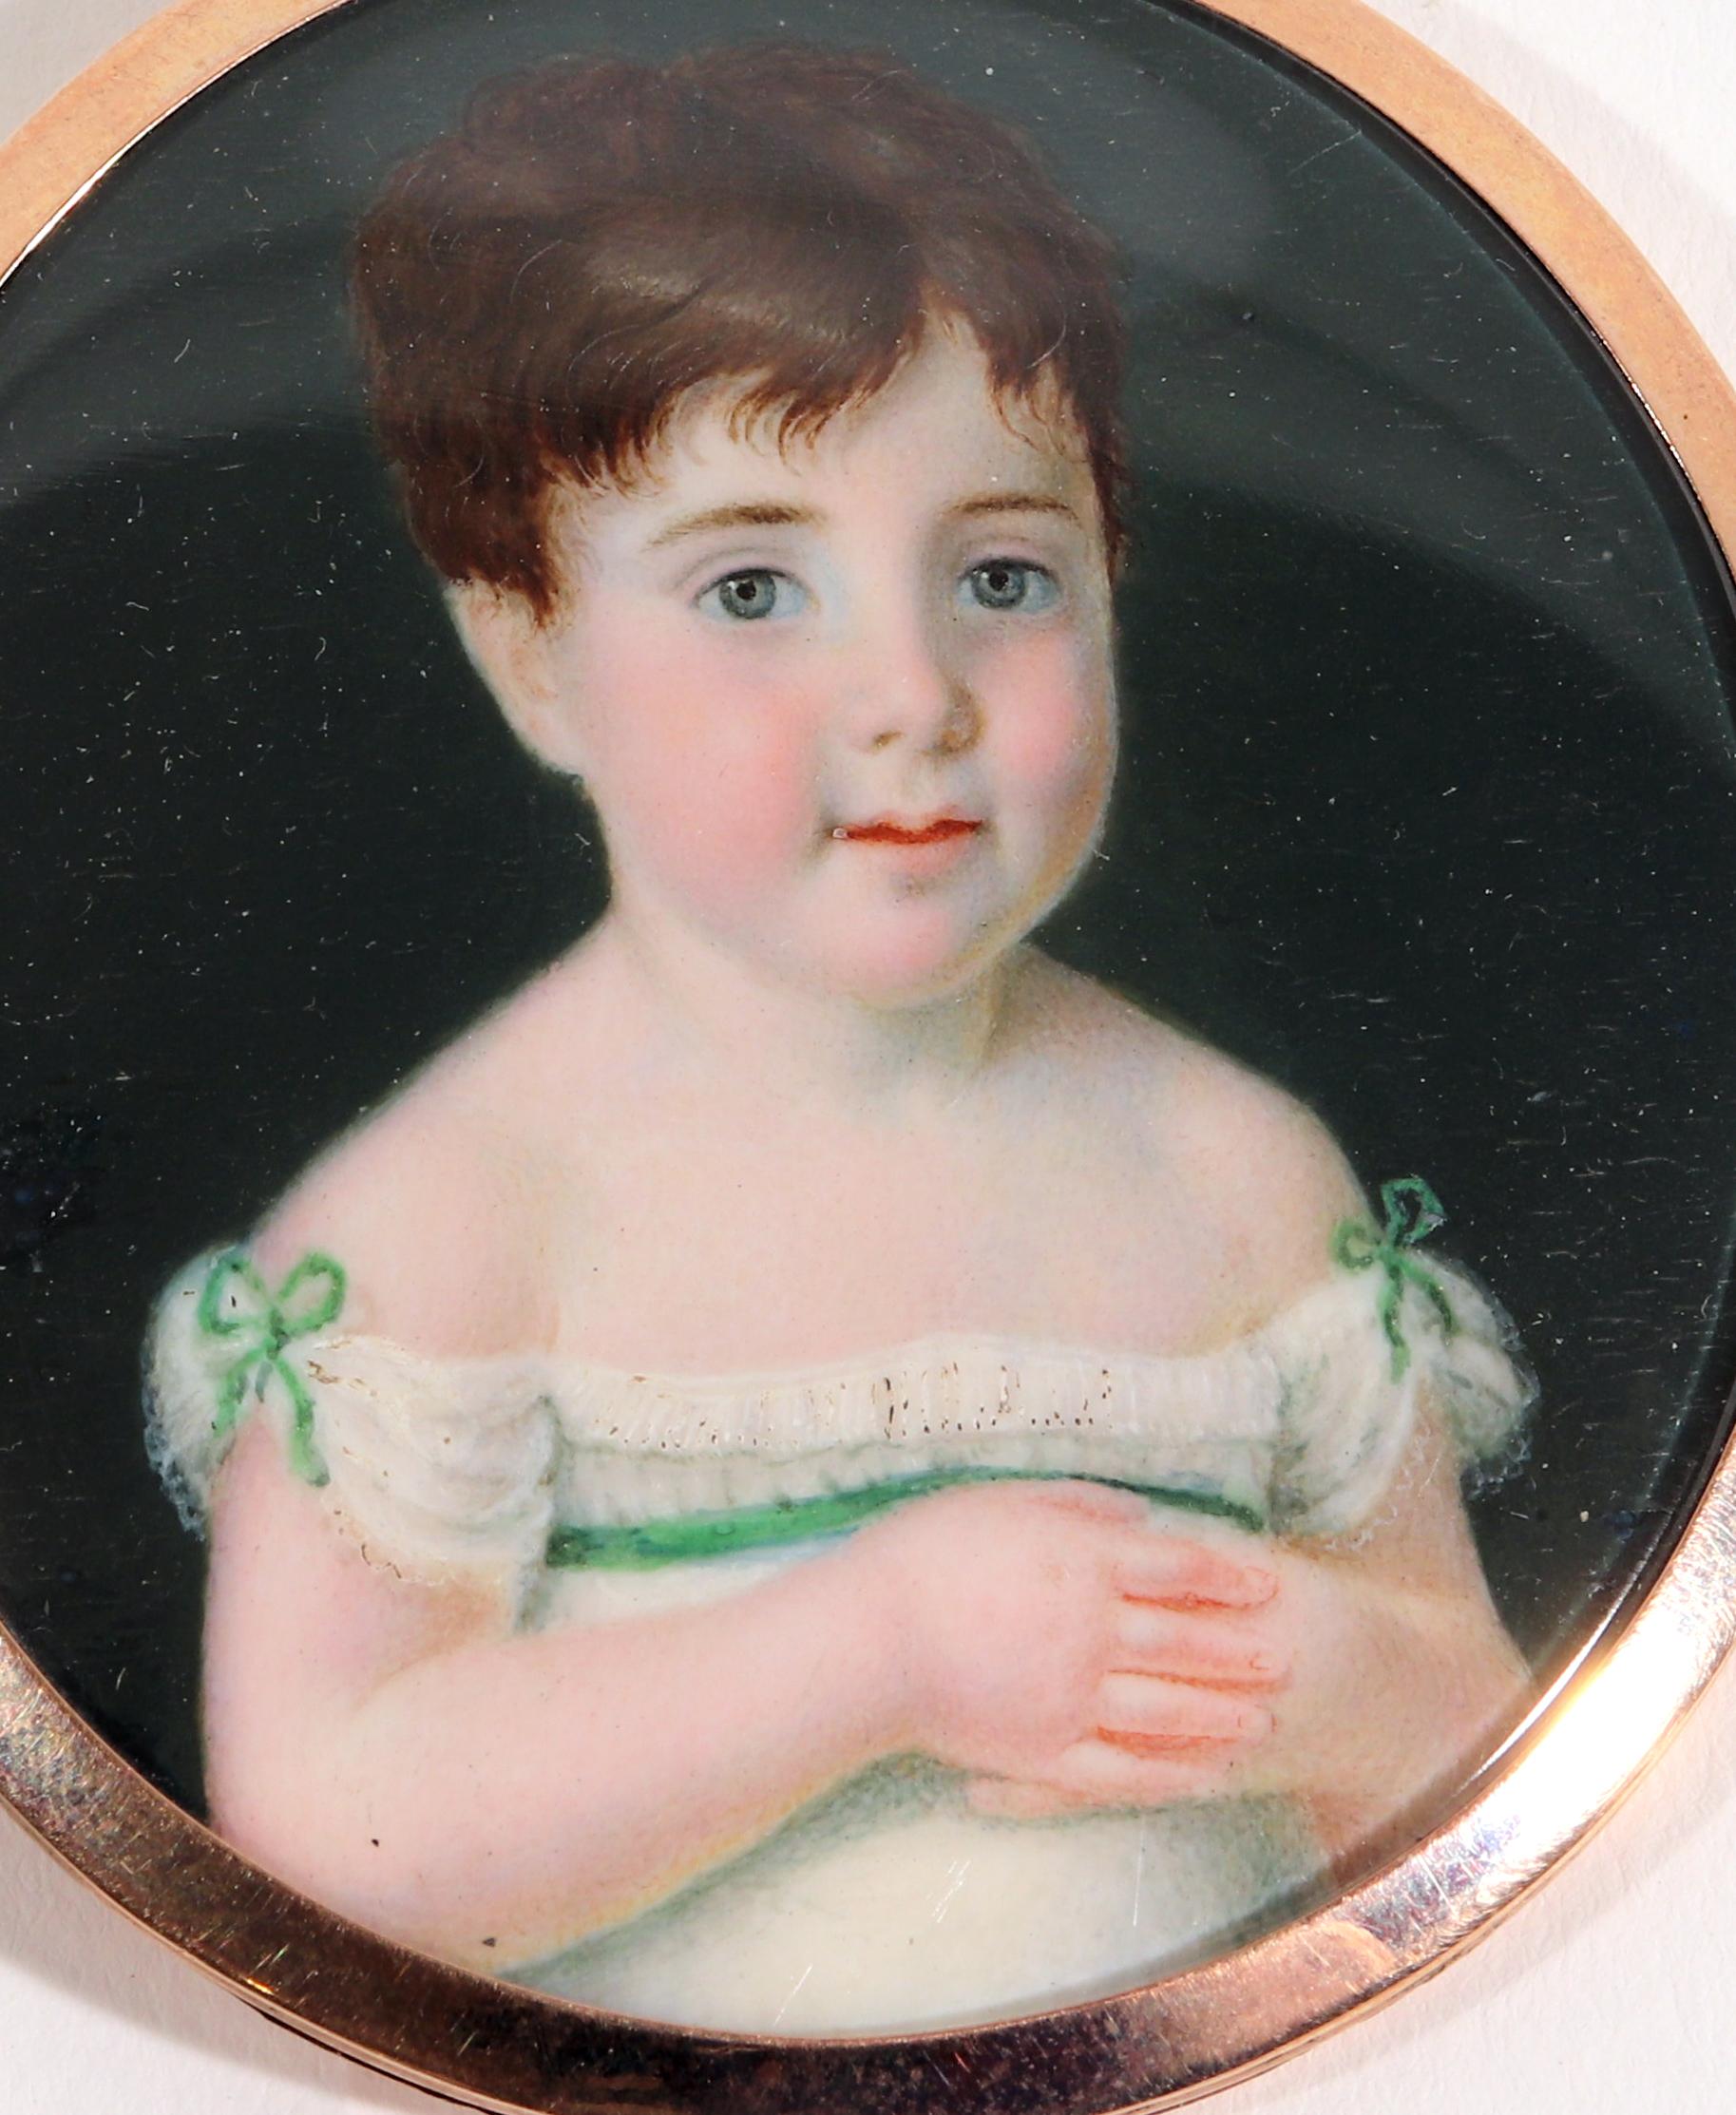 Porträtminiatur eines jungen Mädchens, 
Gezeichnet Corno 1817

Die große ovale Miniatur in einem goldenen Rahmen mit erhabener Aufhängeschlaufe zeigt ein junges Mädchen, das nach links vorne blickt und ein schulterfreies weißes Kleid mit einer